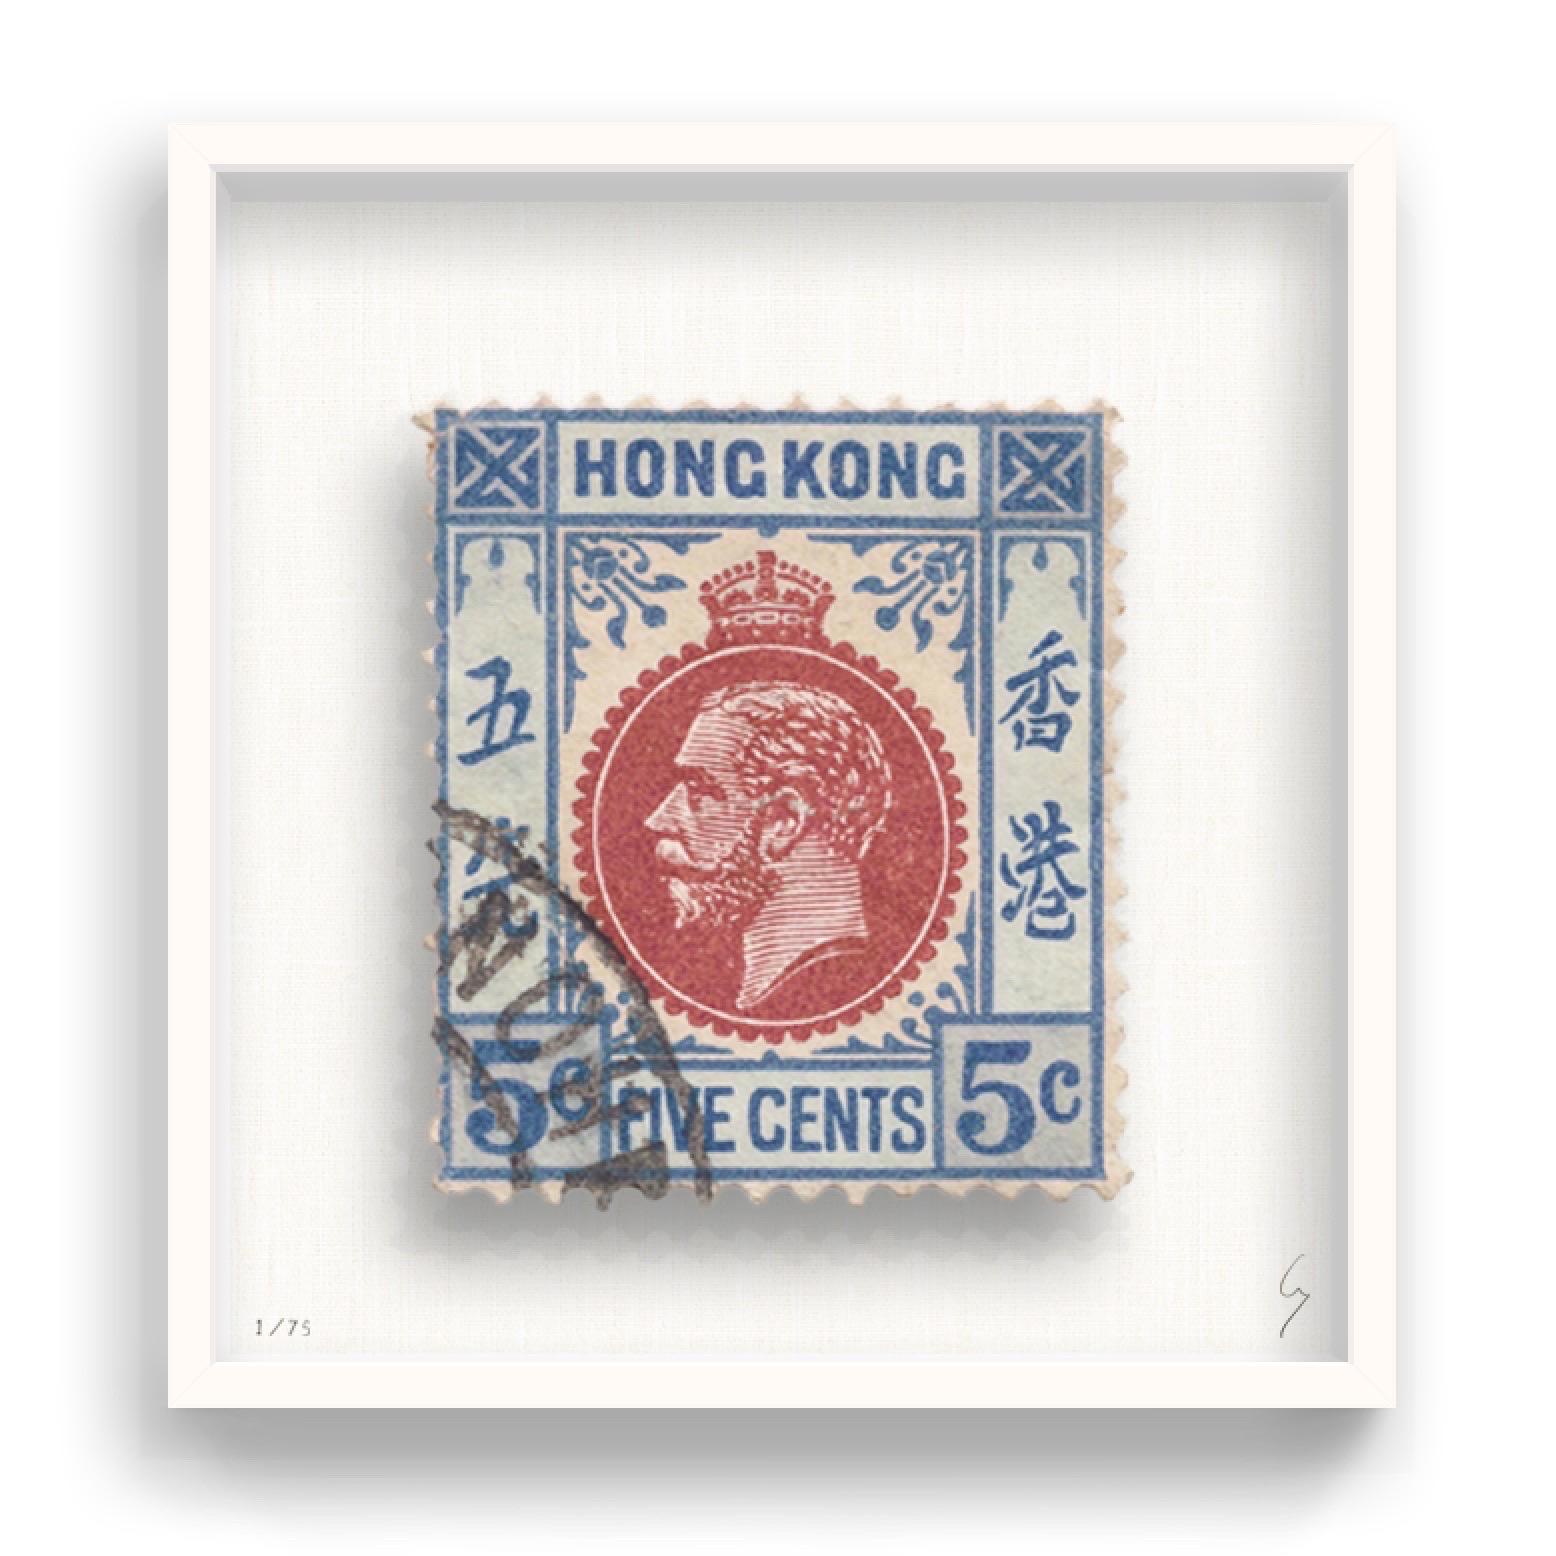 Guy Gee, Hongkong (mittel)

Handgravur auf 350gsm auf G.F Smith Karton
53 x 56cm (20 4/5 x 22 2/5 in)
Inklusive Rahmen 
Auflage von 75 

Jedes Kunstwerk von Guy wurde auf der Grundlage einer Originalbriefmarke digital nachgebildet. Das von Hand